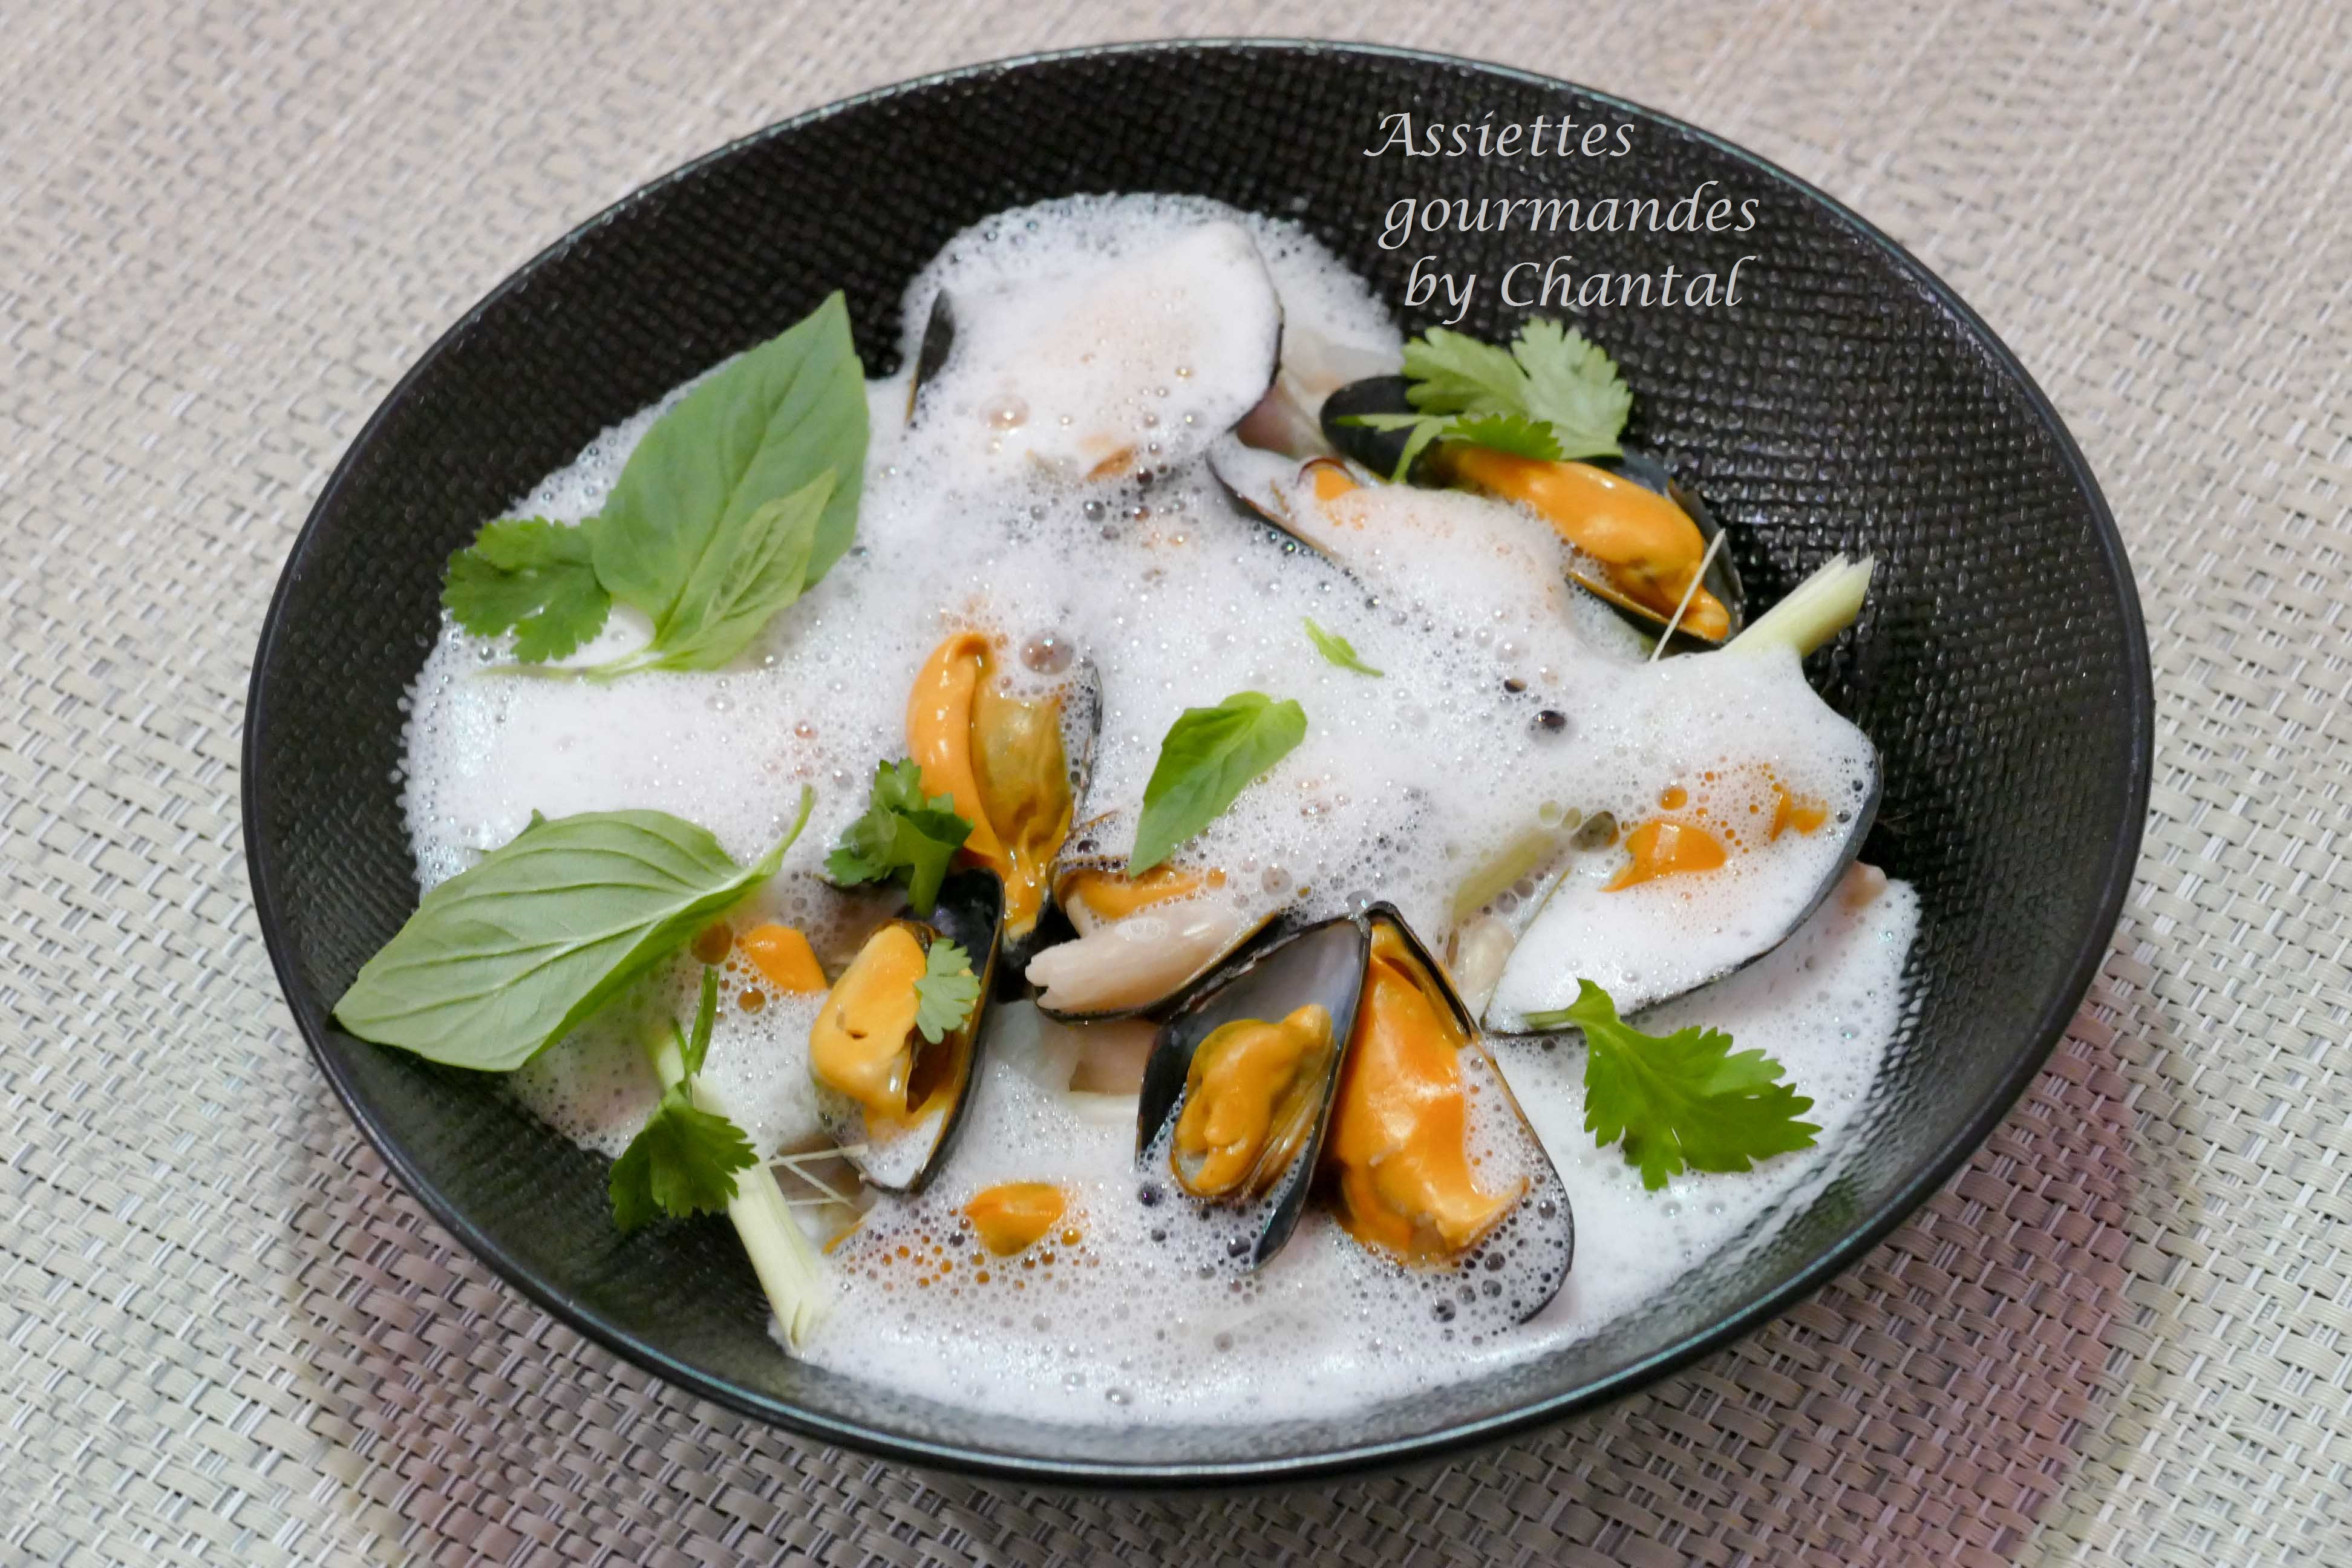 Soupe Thaï aux moules de bouchot AOP - Recette par Turbigo Gourmandises